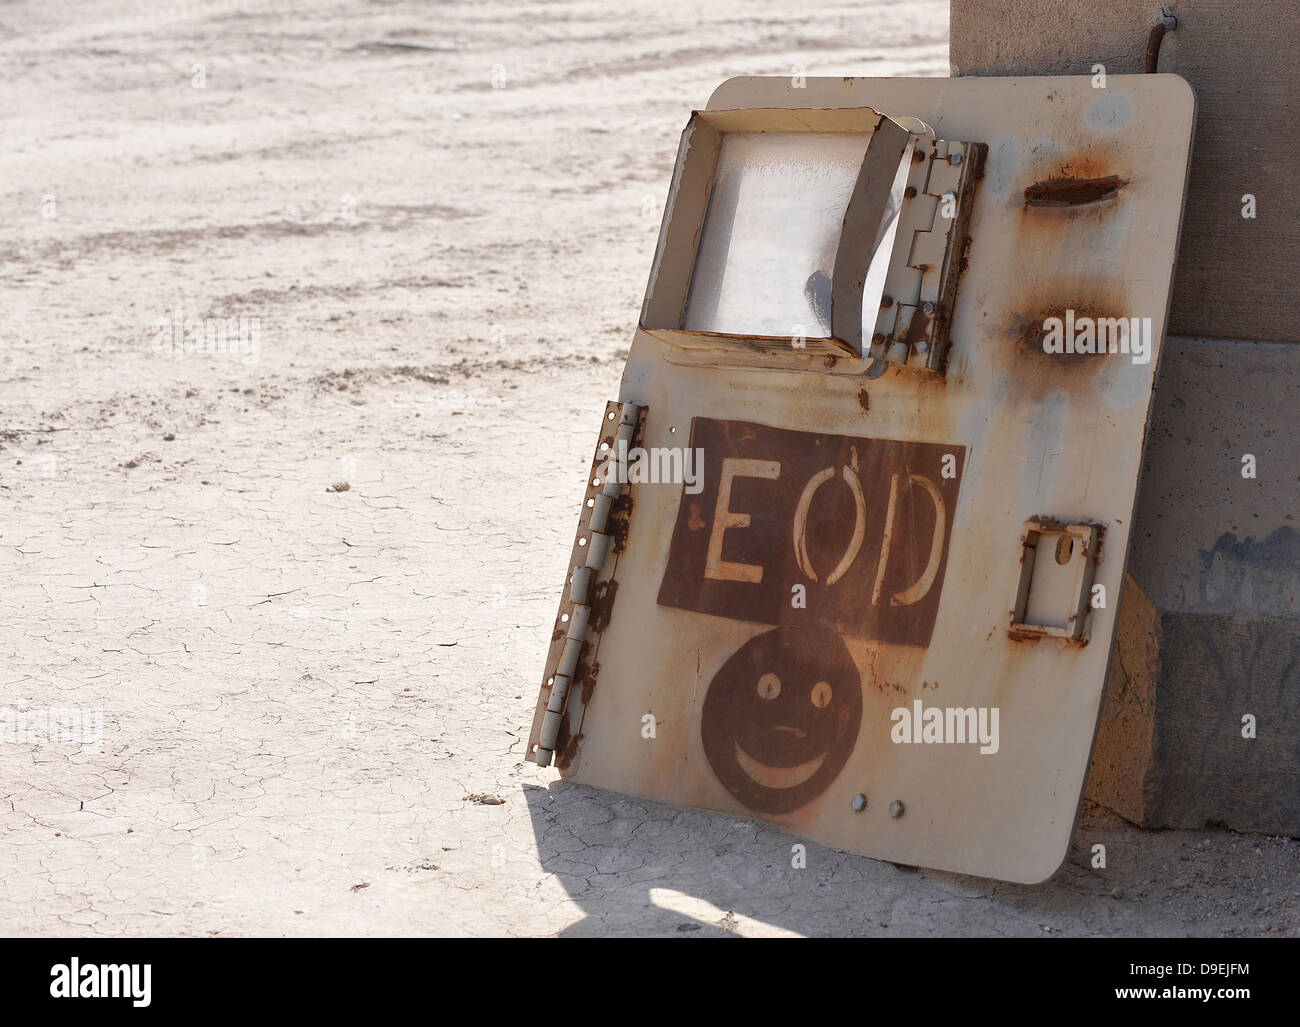 Un'eliminazione degli ordigni esplosivi logo è dipinta su una vecchia porta del veicolo in corrispondenza di una delle gamme in Ali Air Base, Iraq. Foto Stock